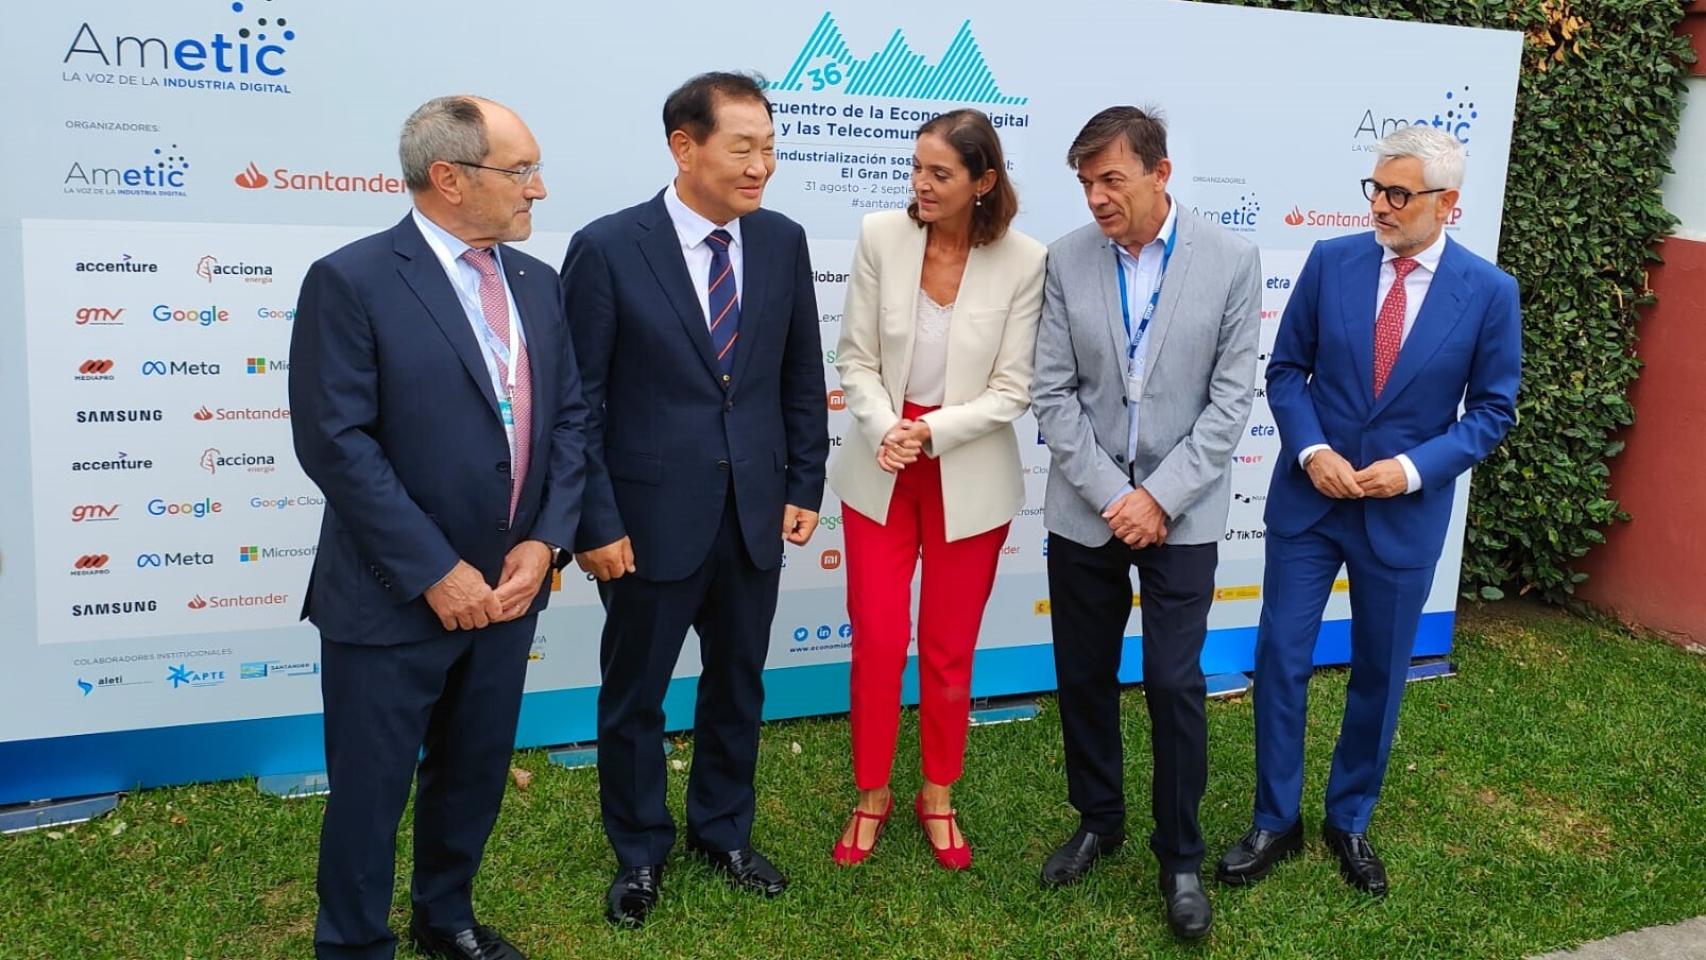 La ministra de Industria, Reyes Maroto, junto a Jong-Hee Han -CEO mundial de Samsung-, Pedro Mier -presidente de Ametic- y otras personalidades.